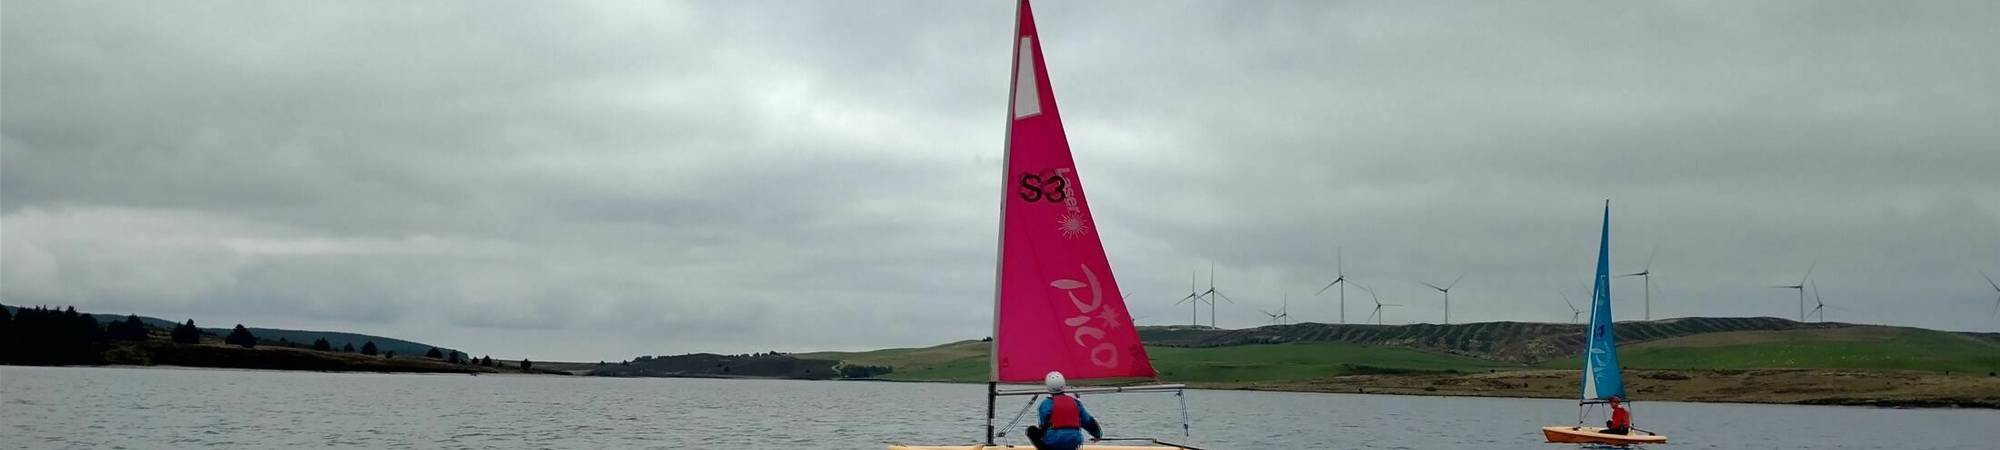 BTEC Sailing Llyn Brenig 3